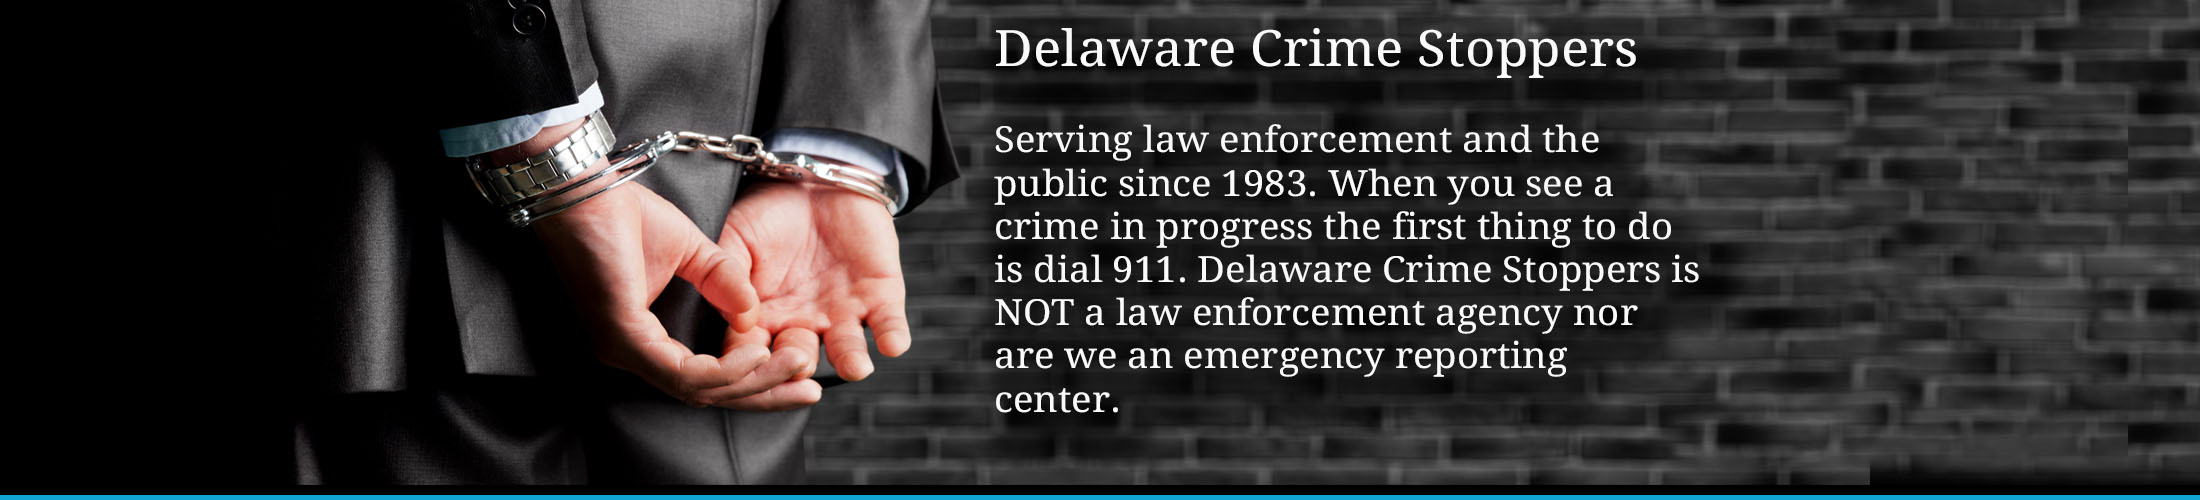 Delaware Crime Stoppers slide